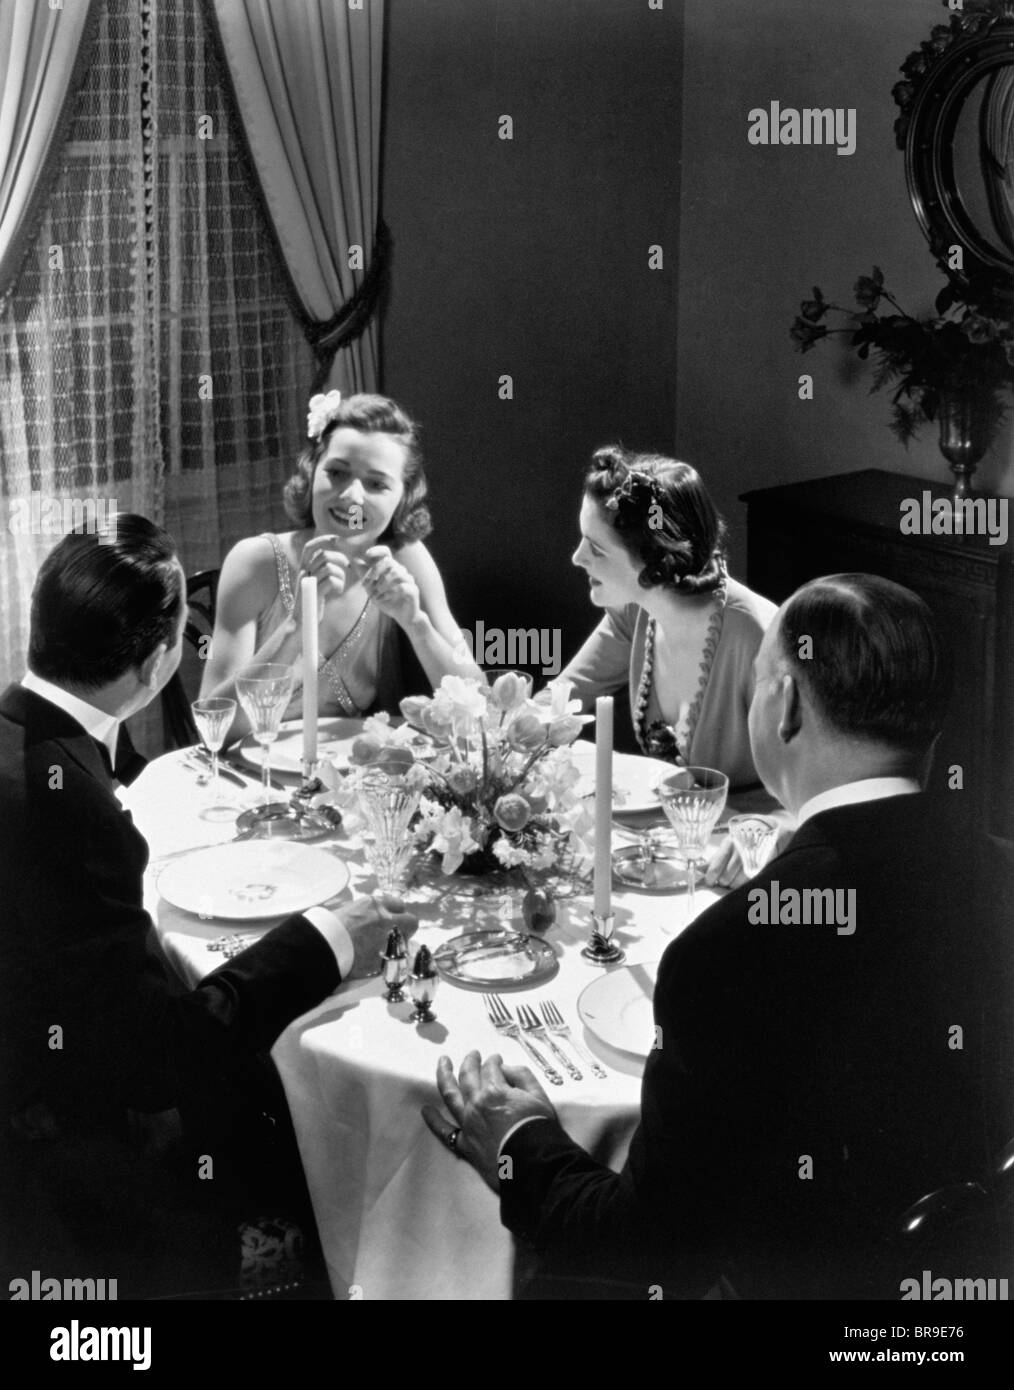 Années 1930 DEUX COUPLES DÎNER FORMEL PARTIE SITTING AT TABLE Banque D'Images